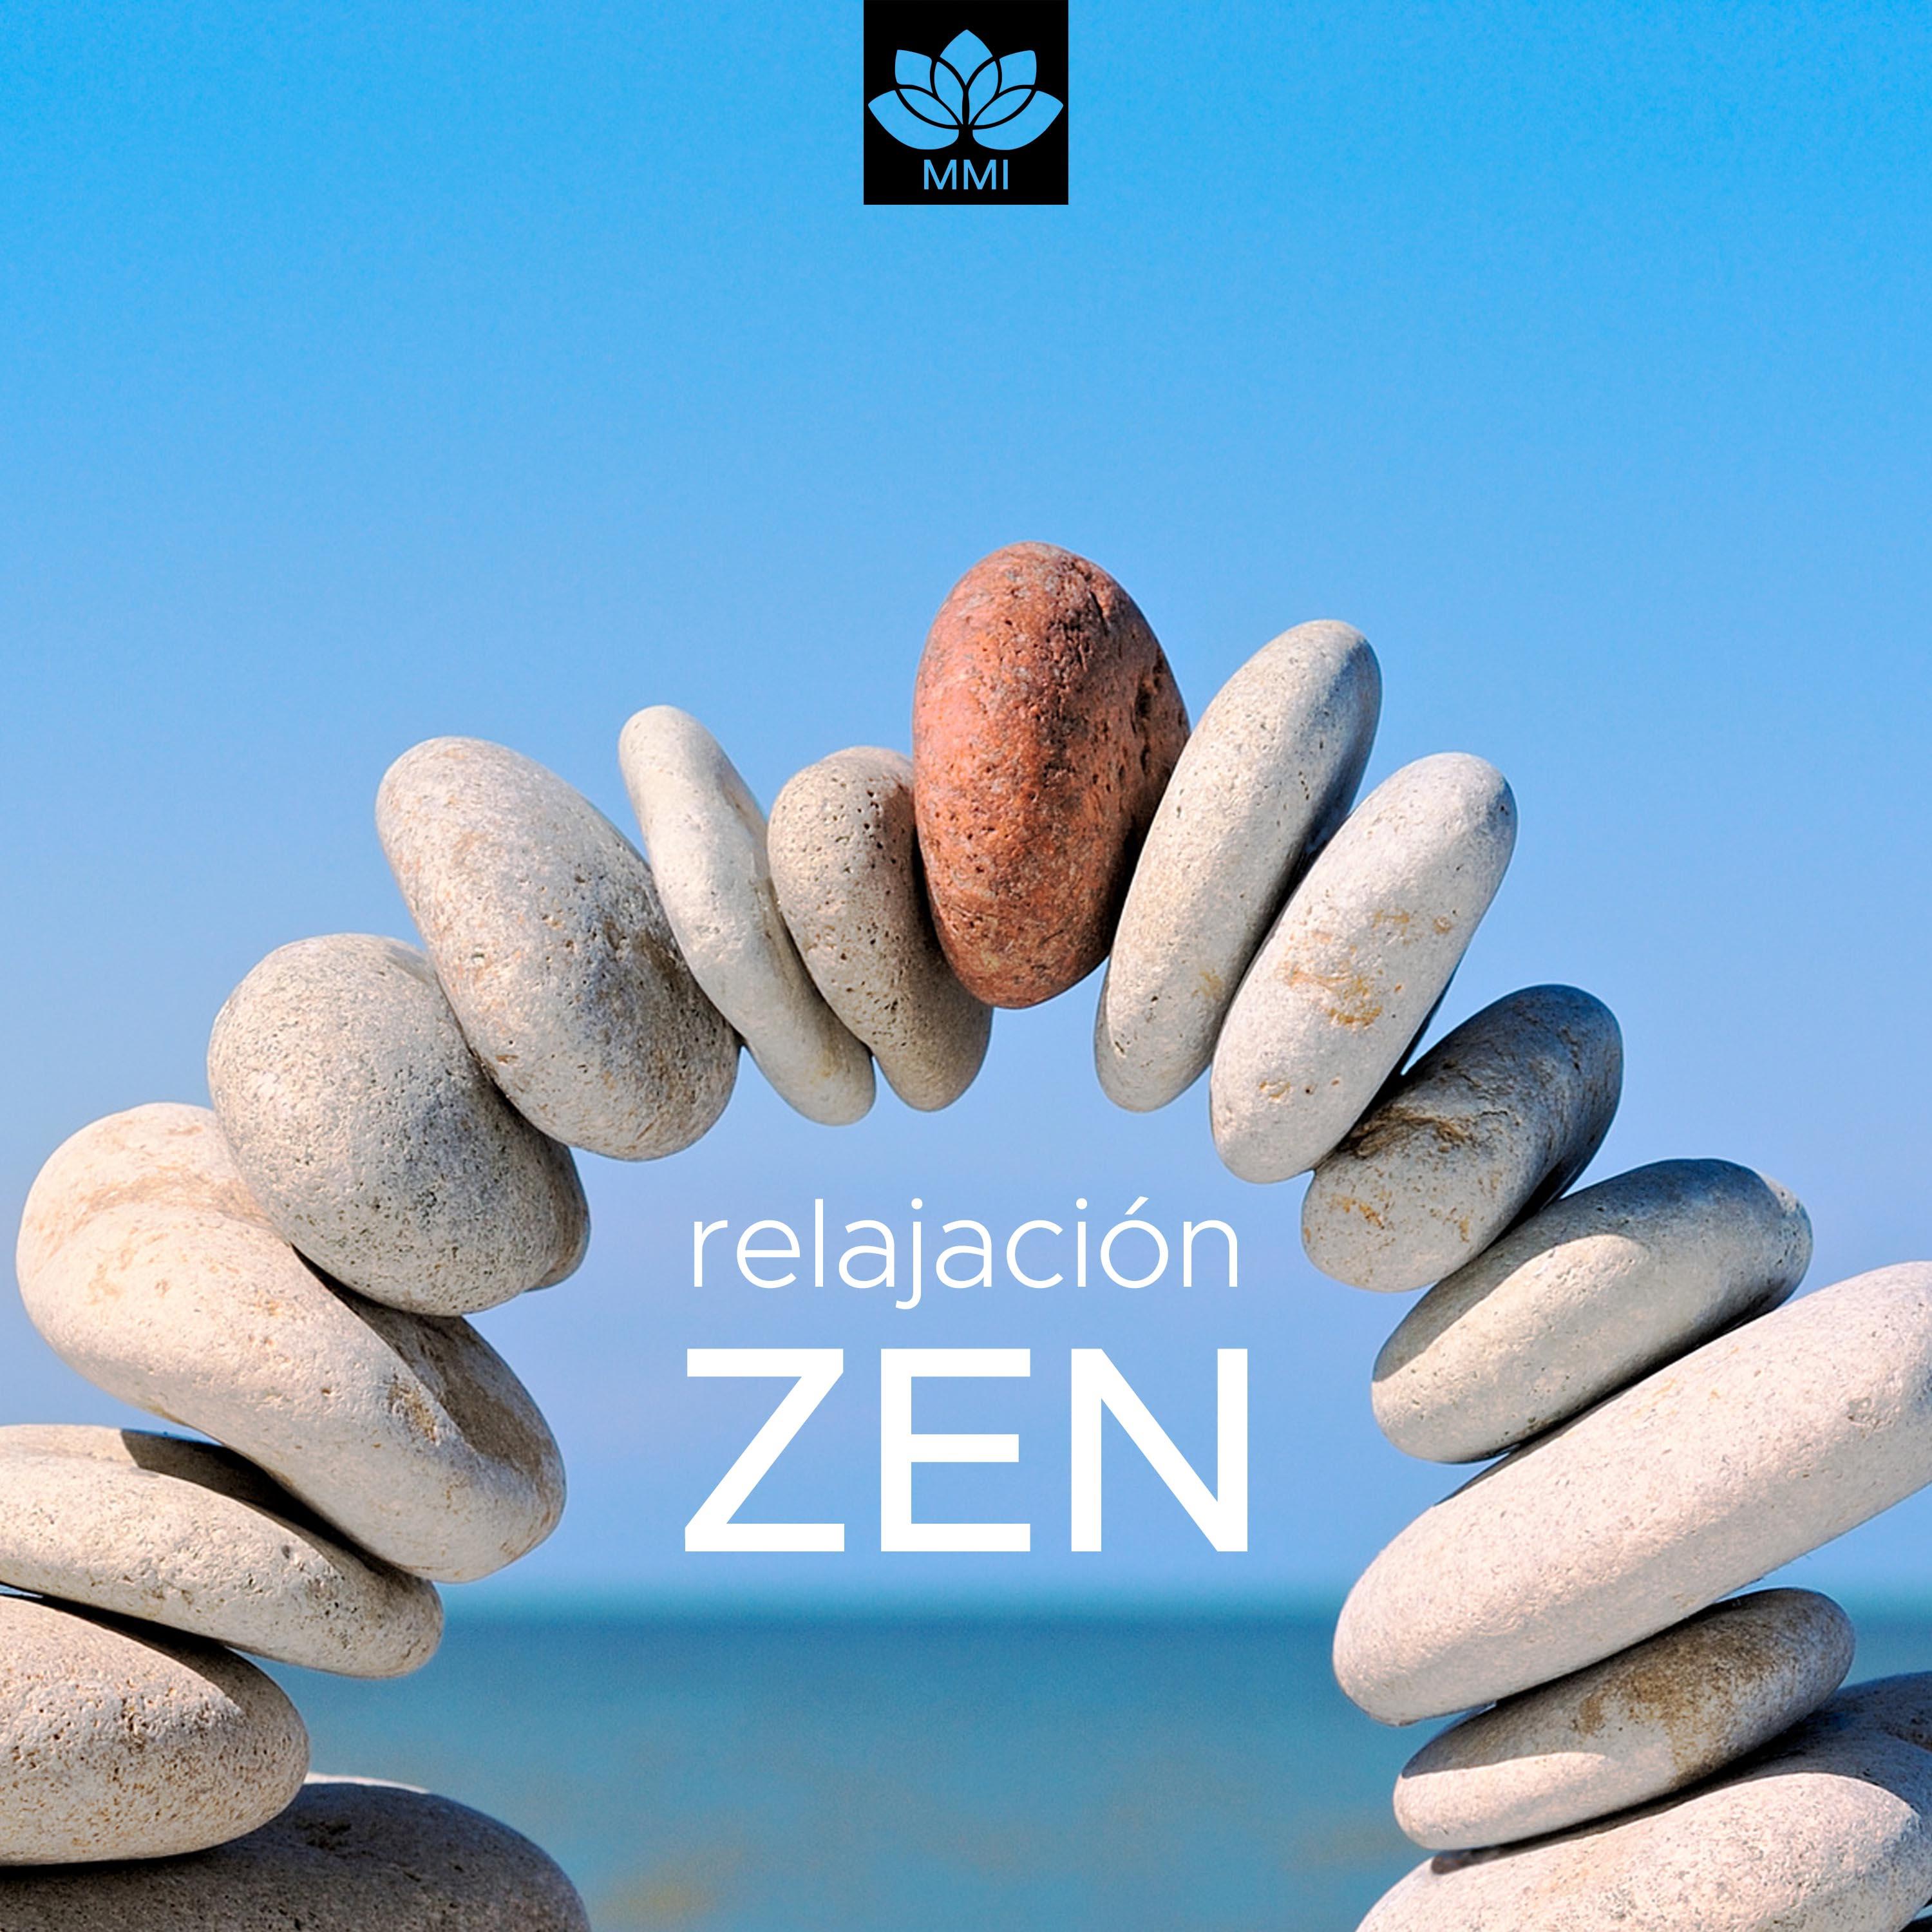 Relajacio n Zen: Mu sica Relajante Ambiente para el Pensamiento Positivo, el Yoga, la Meditacio n, Sue o y Bienestar